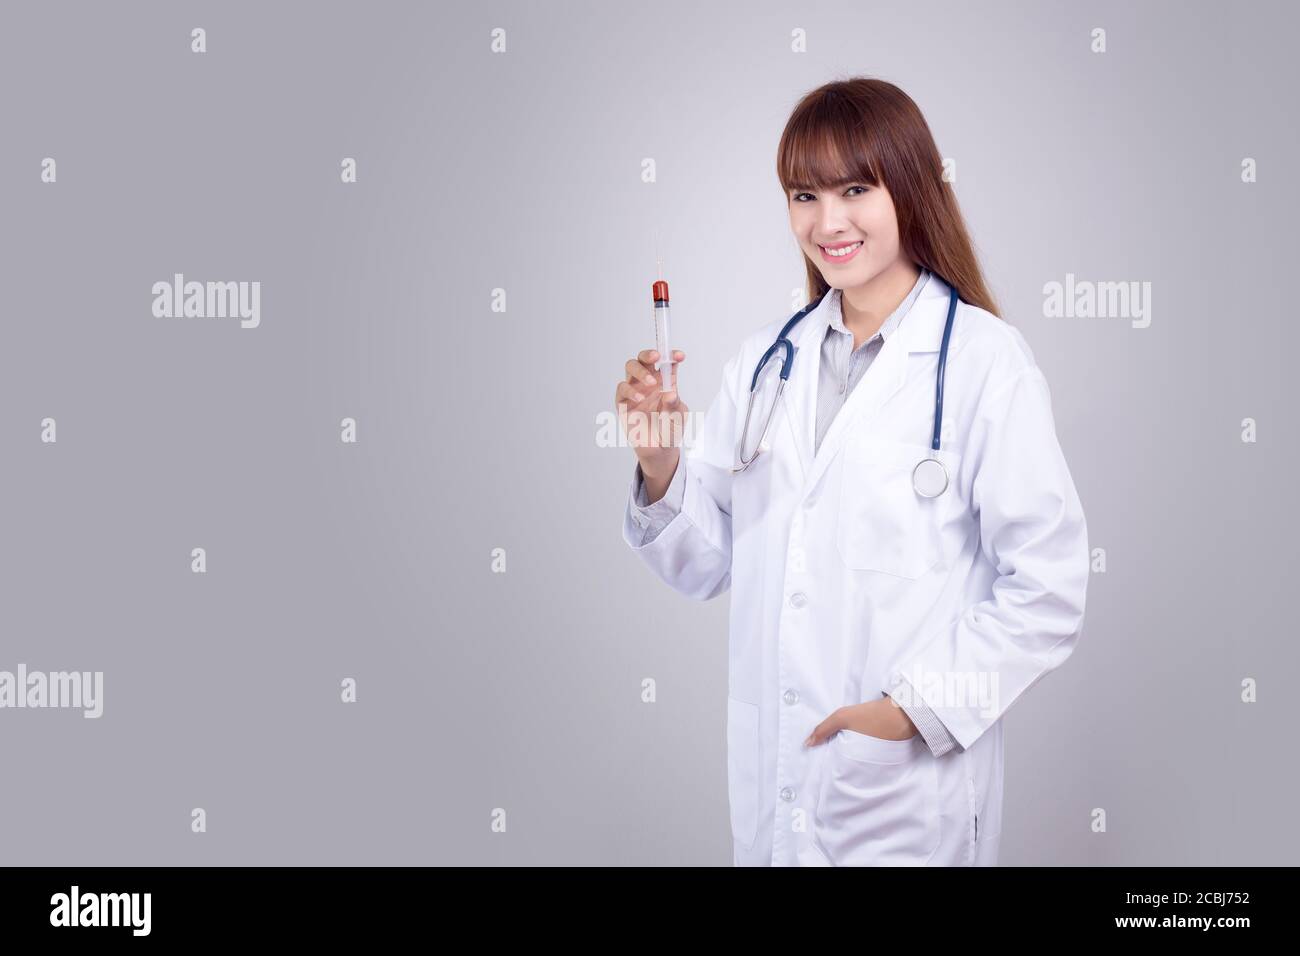 Gesundes Konzept : Junge asiatische Arzt mit hypodermic Spritze in der Hand isolieren auf grauem Hintergrund. Arzt, Klinik, Krankenhaus Poster und Werbung Stockfoto